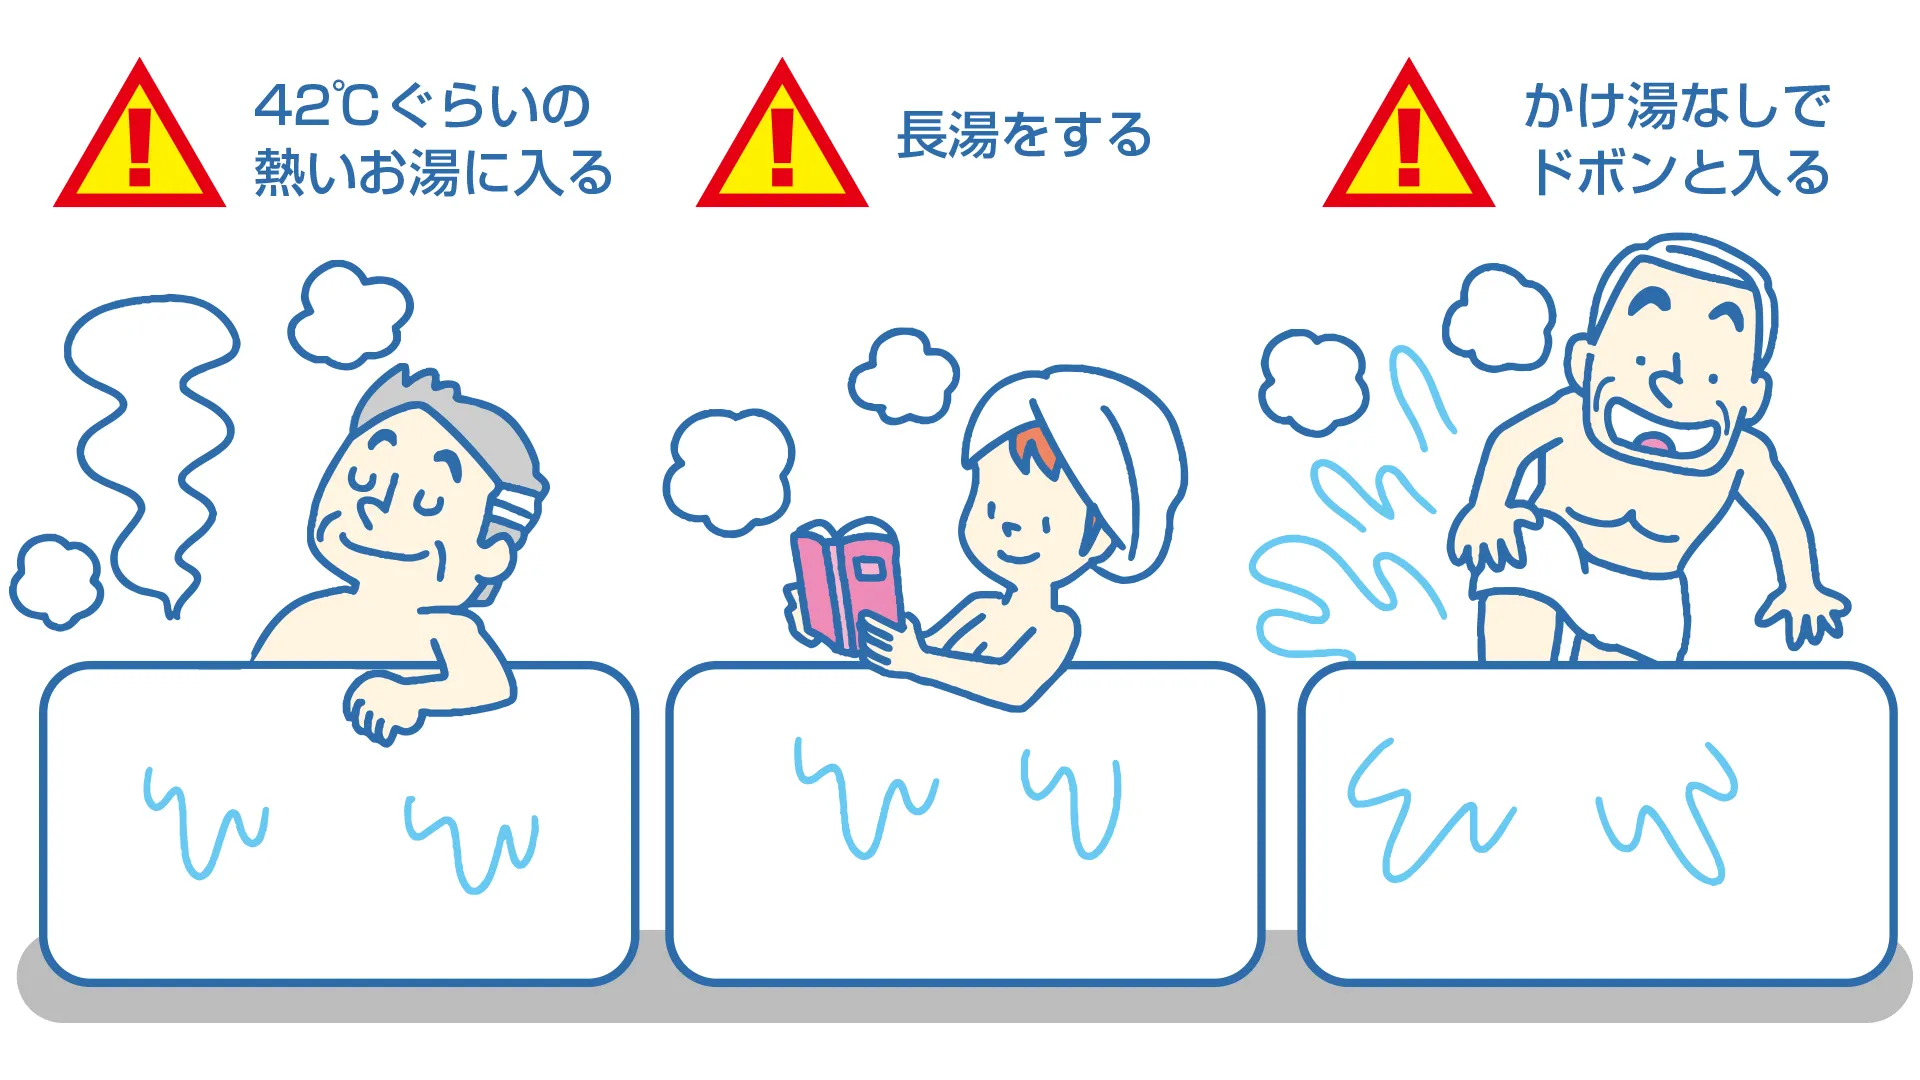 注意したいお風呂の入りかたの例。42度くらいの熱いお湯に入ること、長湯をすること、かけ湯をせずにどぼんと入ること。